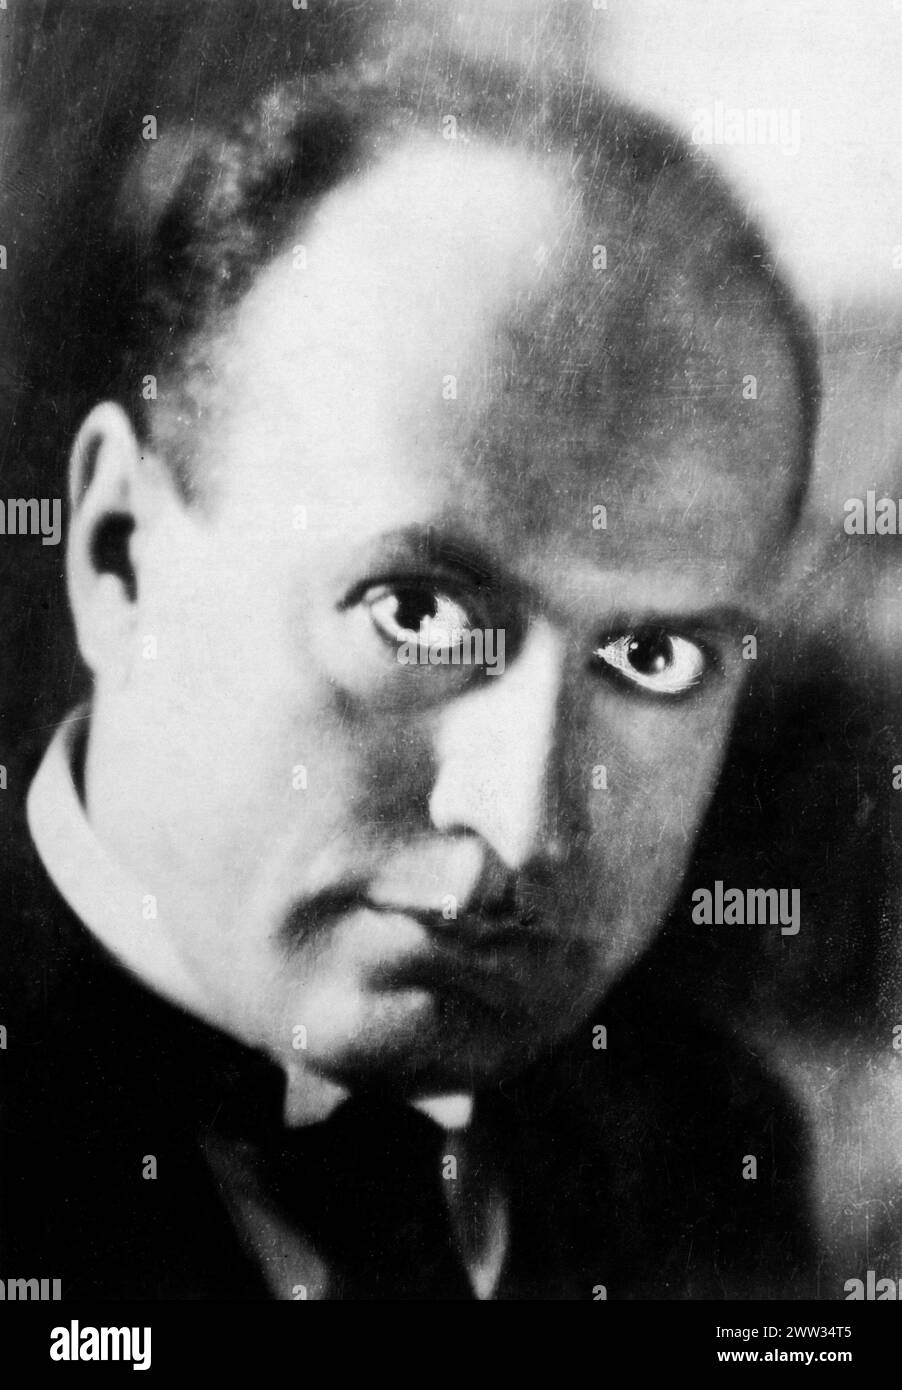 Benito Amilcare Andrea Mussolini (1883 - 1945) - il Duce - dictateur fasciste italien de 1922-1943 - photo retouchée à la main, 1924 Banque D'Images